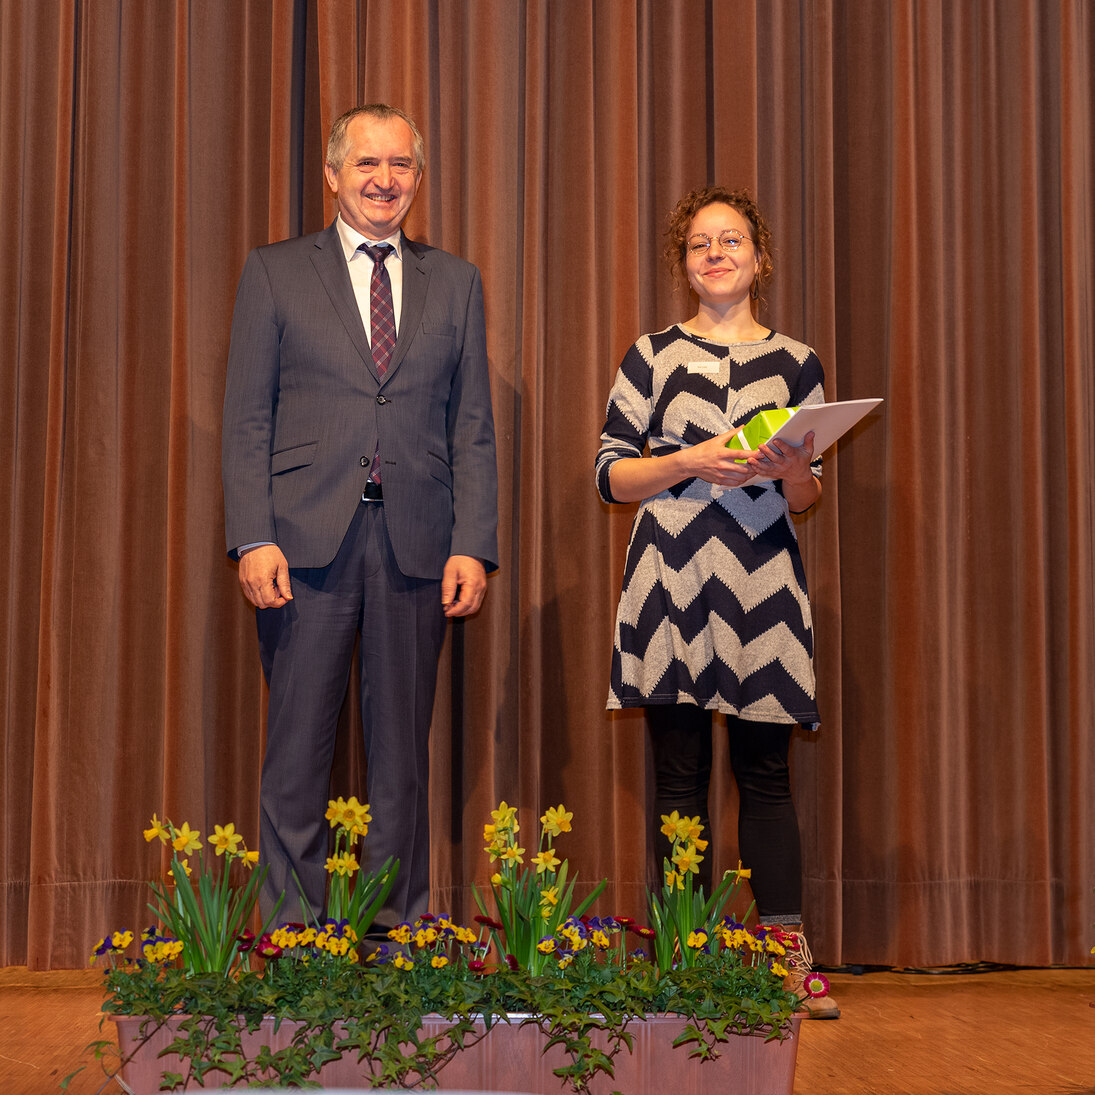 Staatsminister Schmidt auf der Bühne mit einer Preisträgerin.